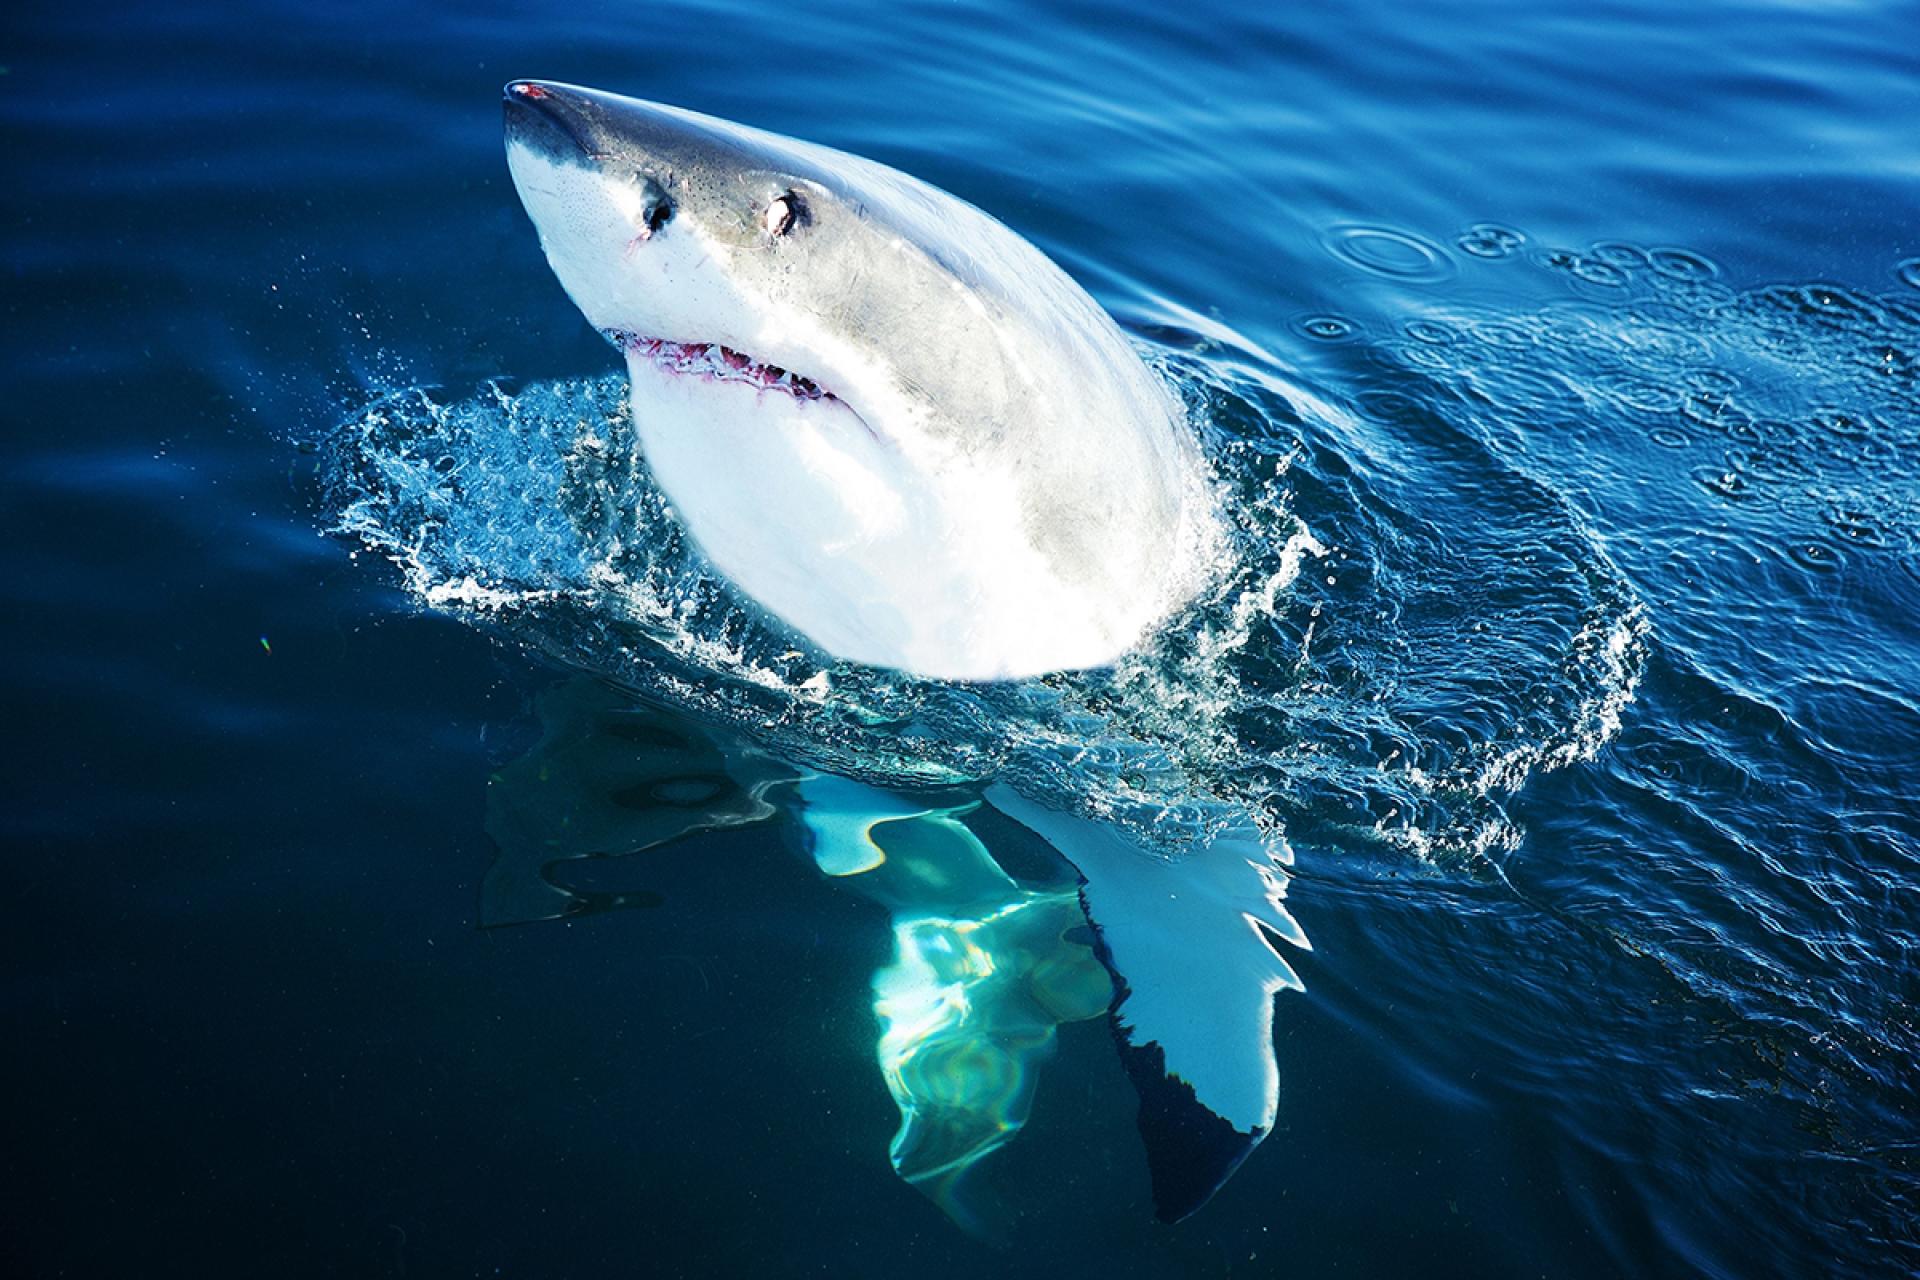 London Photography Awards Winner - The White Shark !